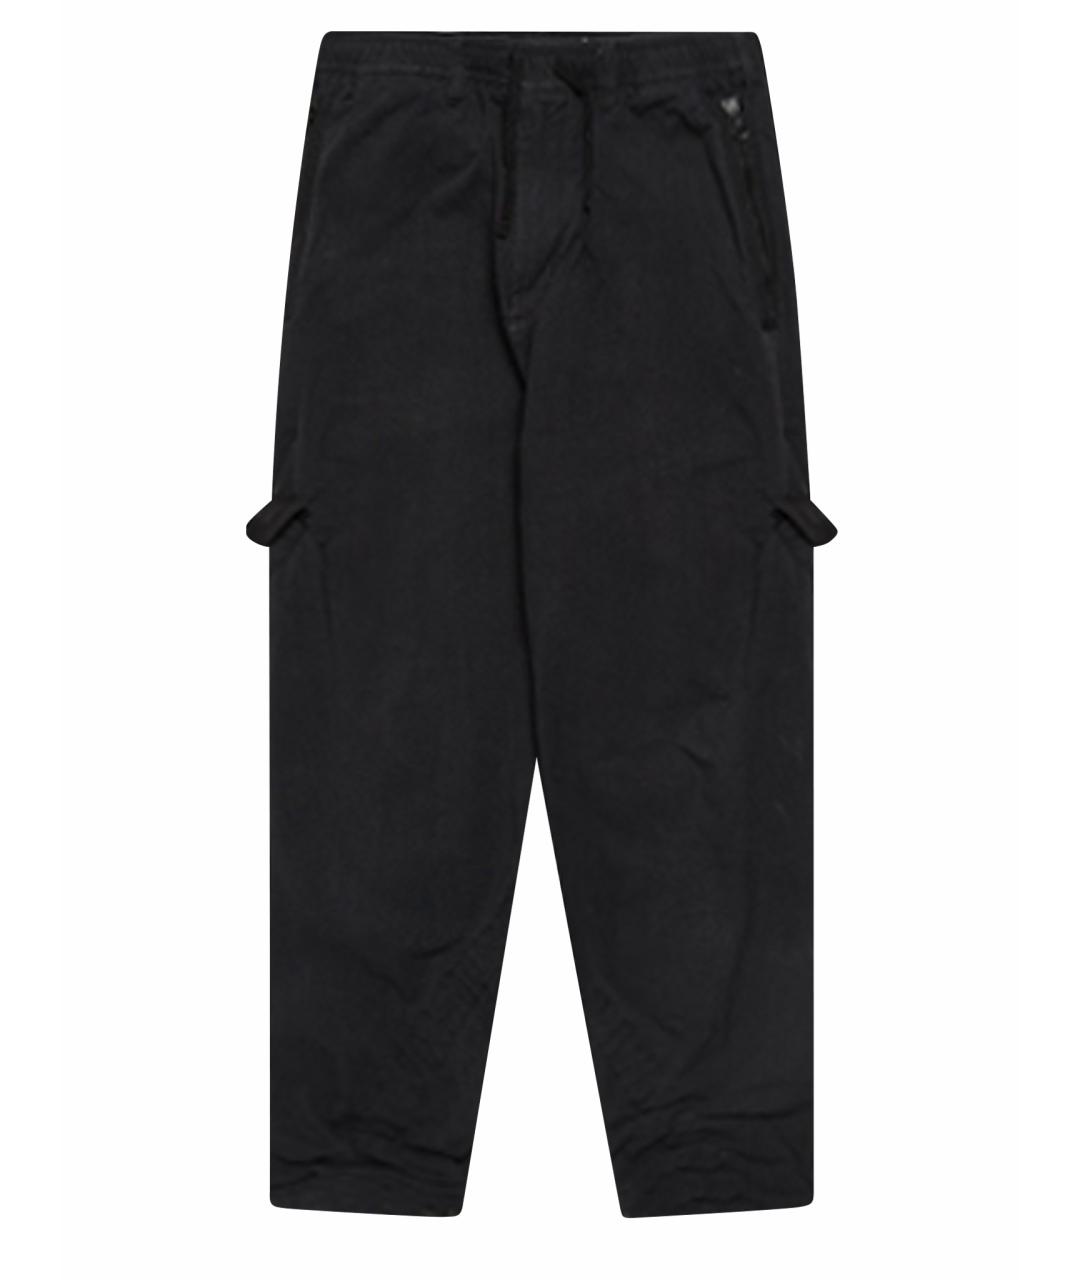 STONE ISLAND SHADOW PROJECT Черные полиамидовые повседневные брюки, фото 1